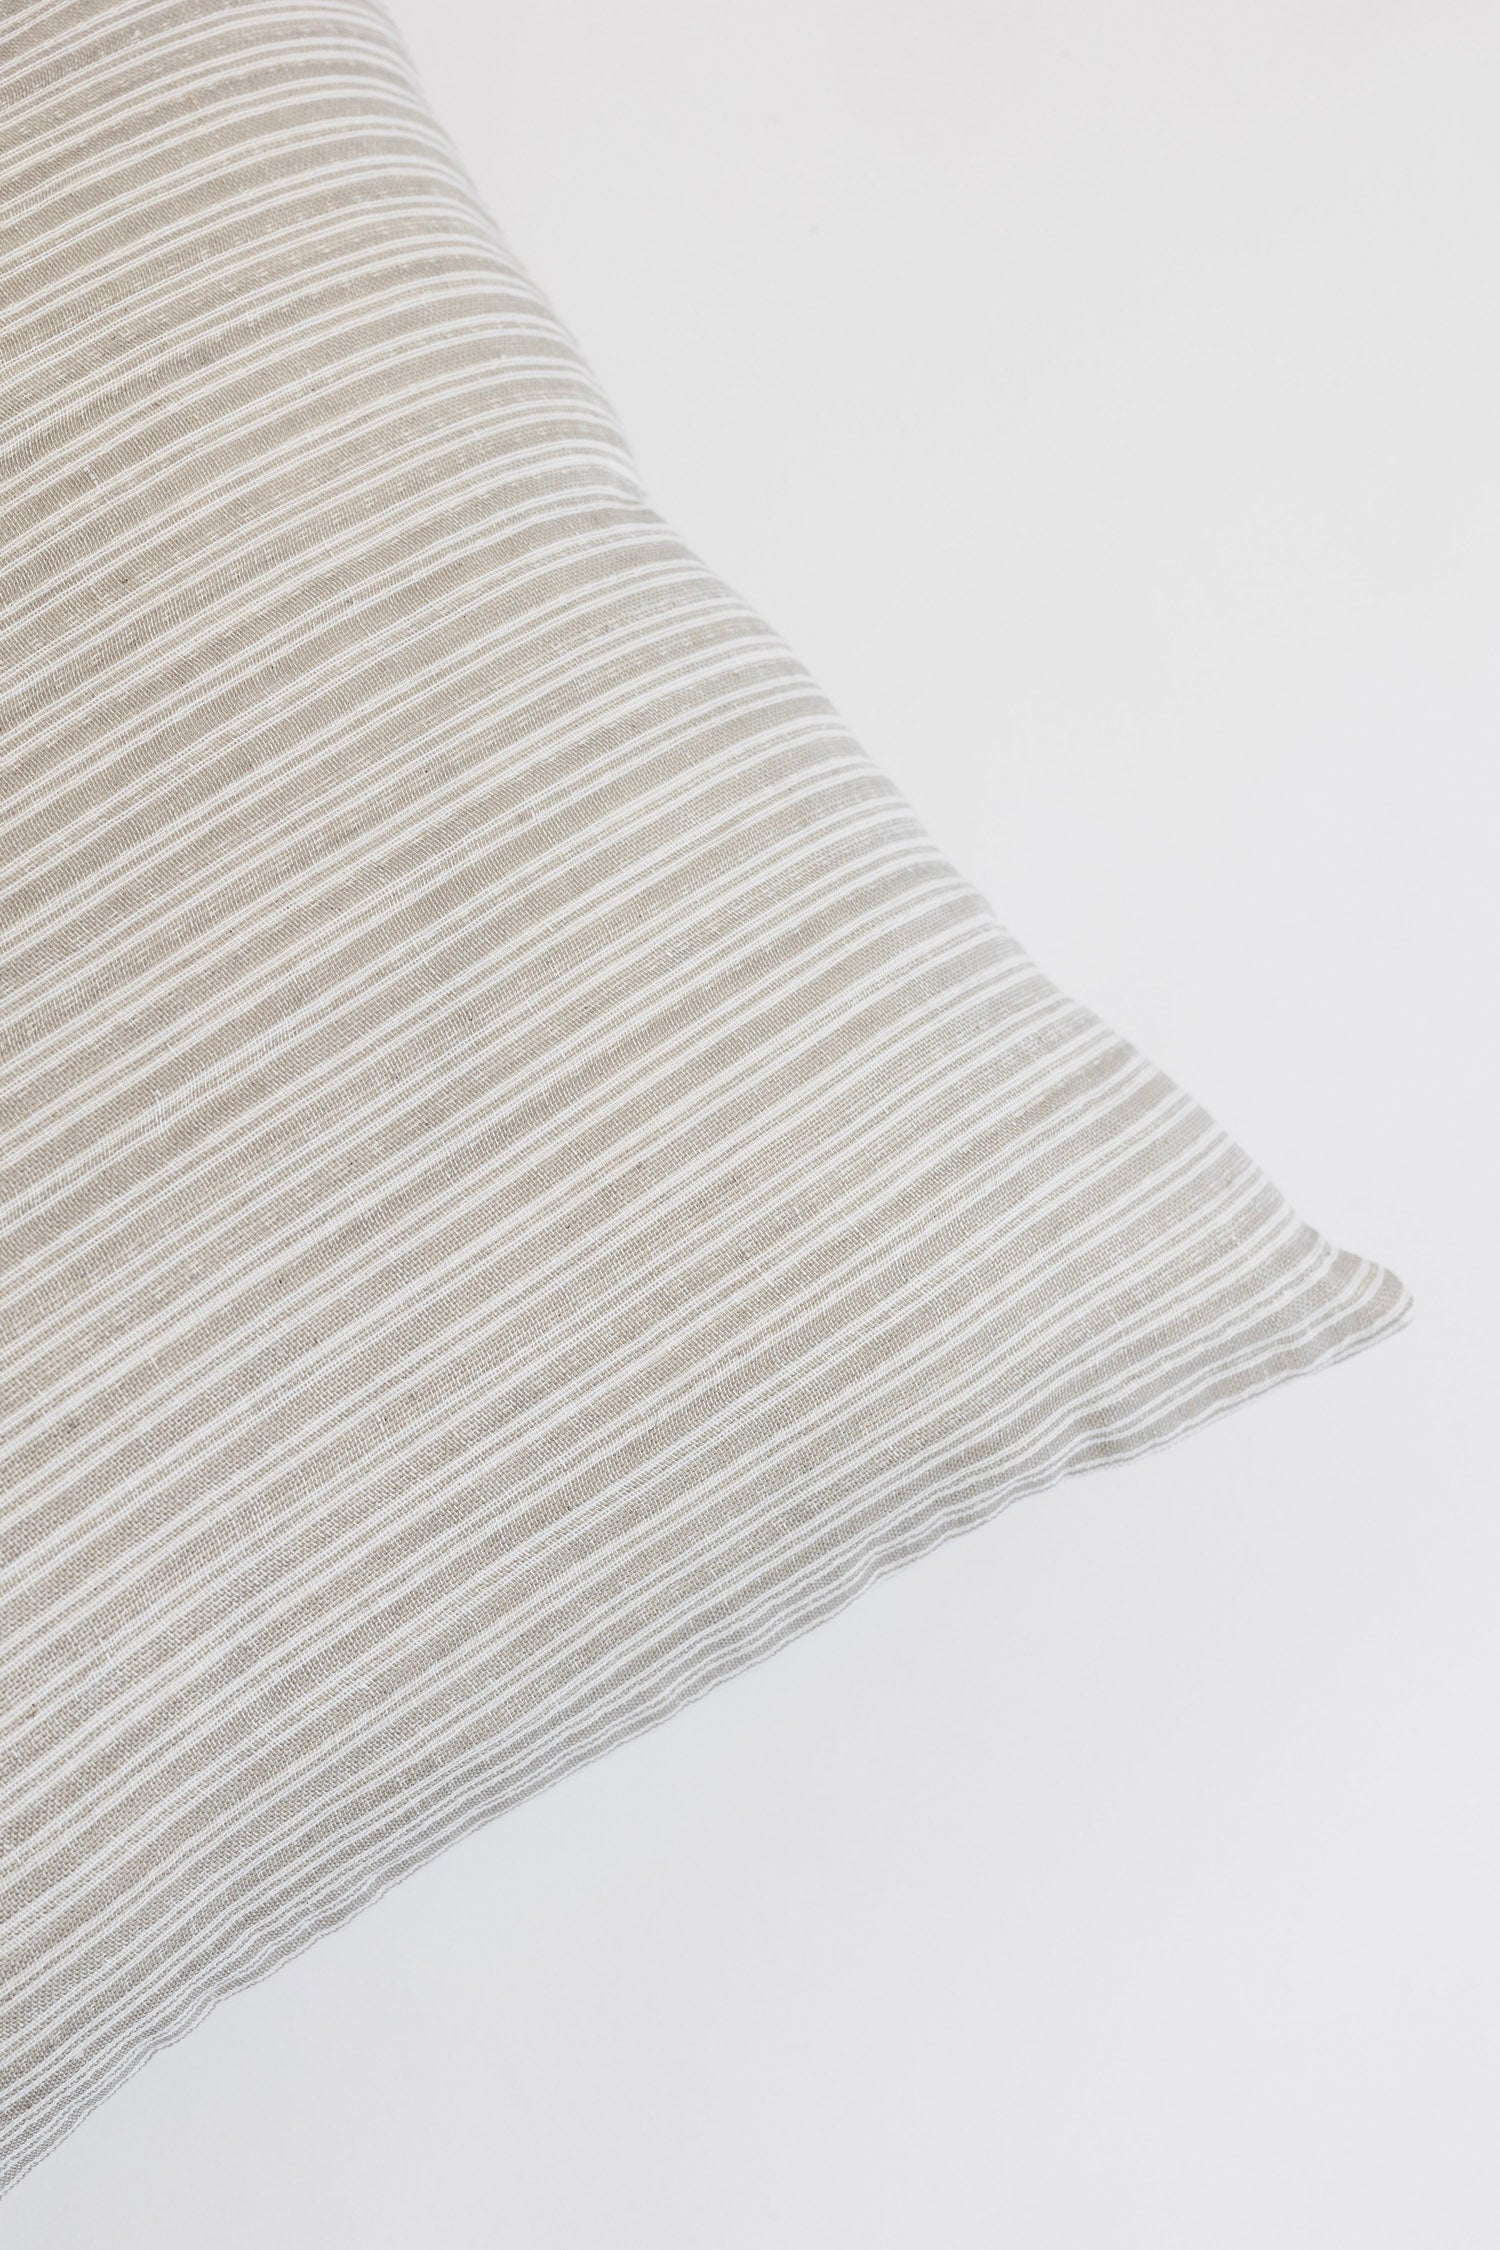 Carden Striped Lumbar Pillow - Natural